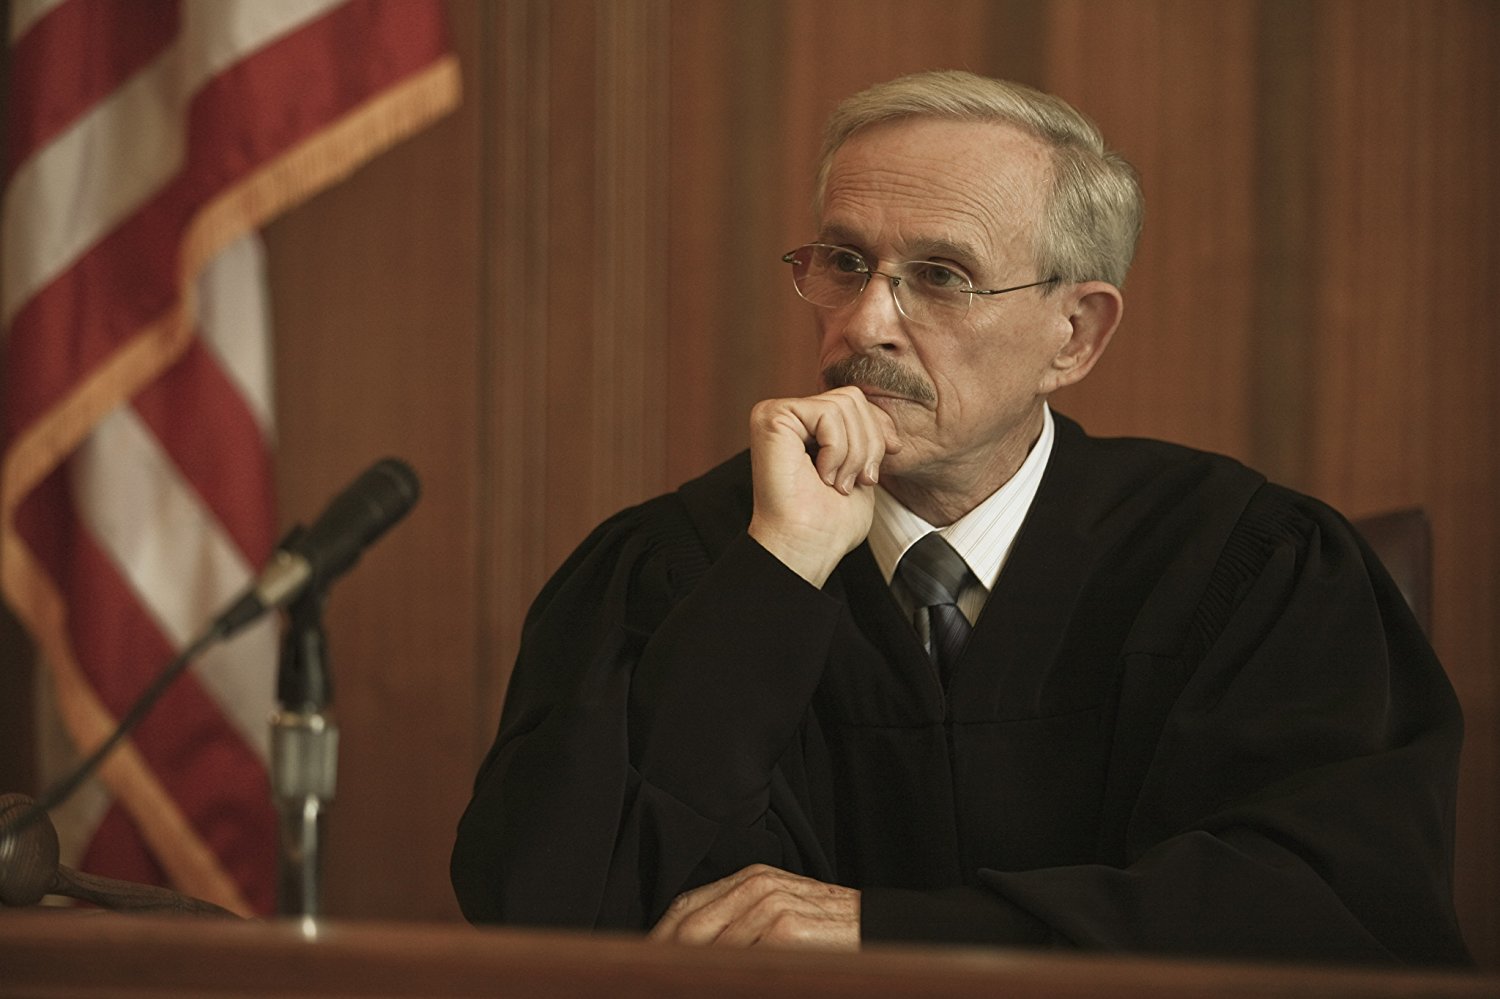 Judge Harold Baker